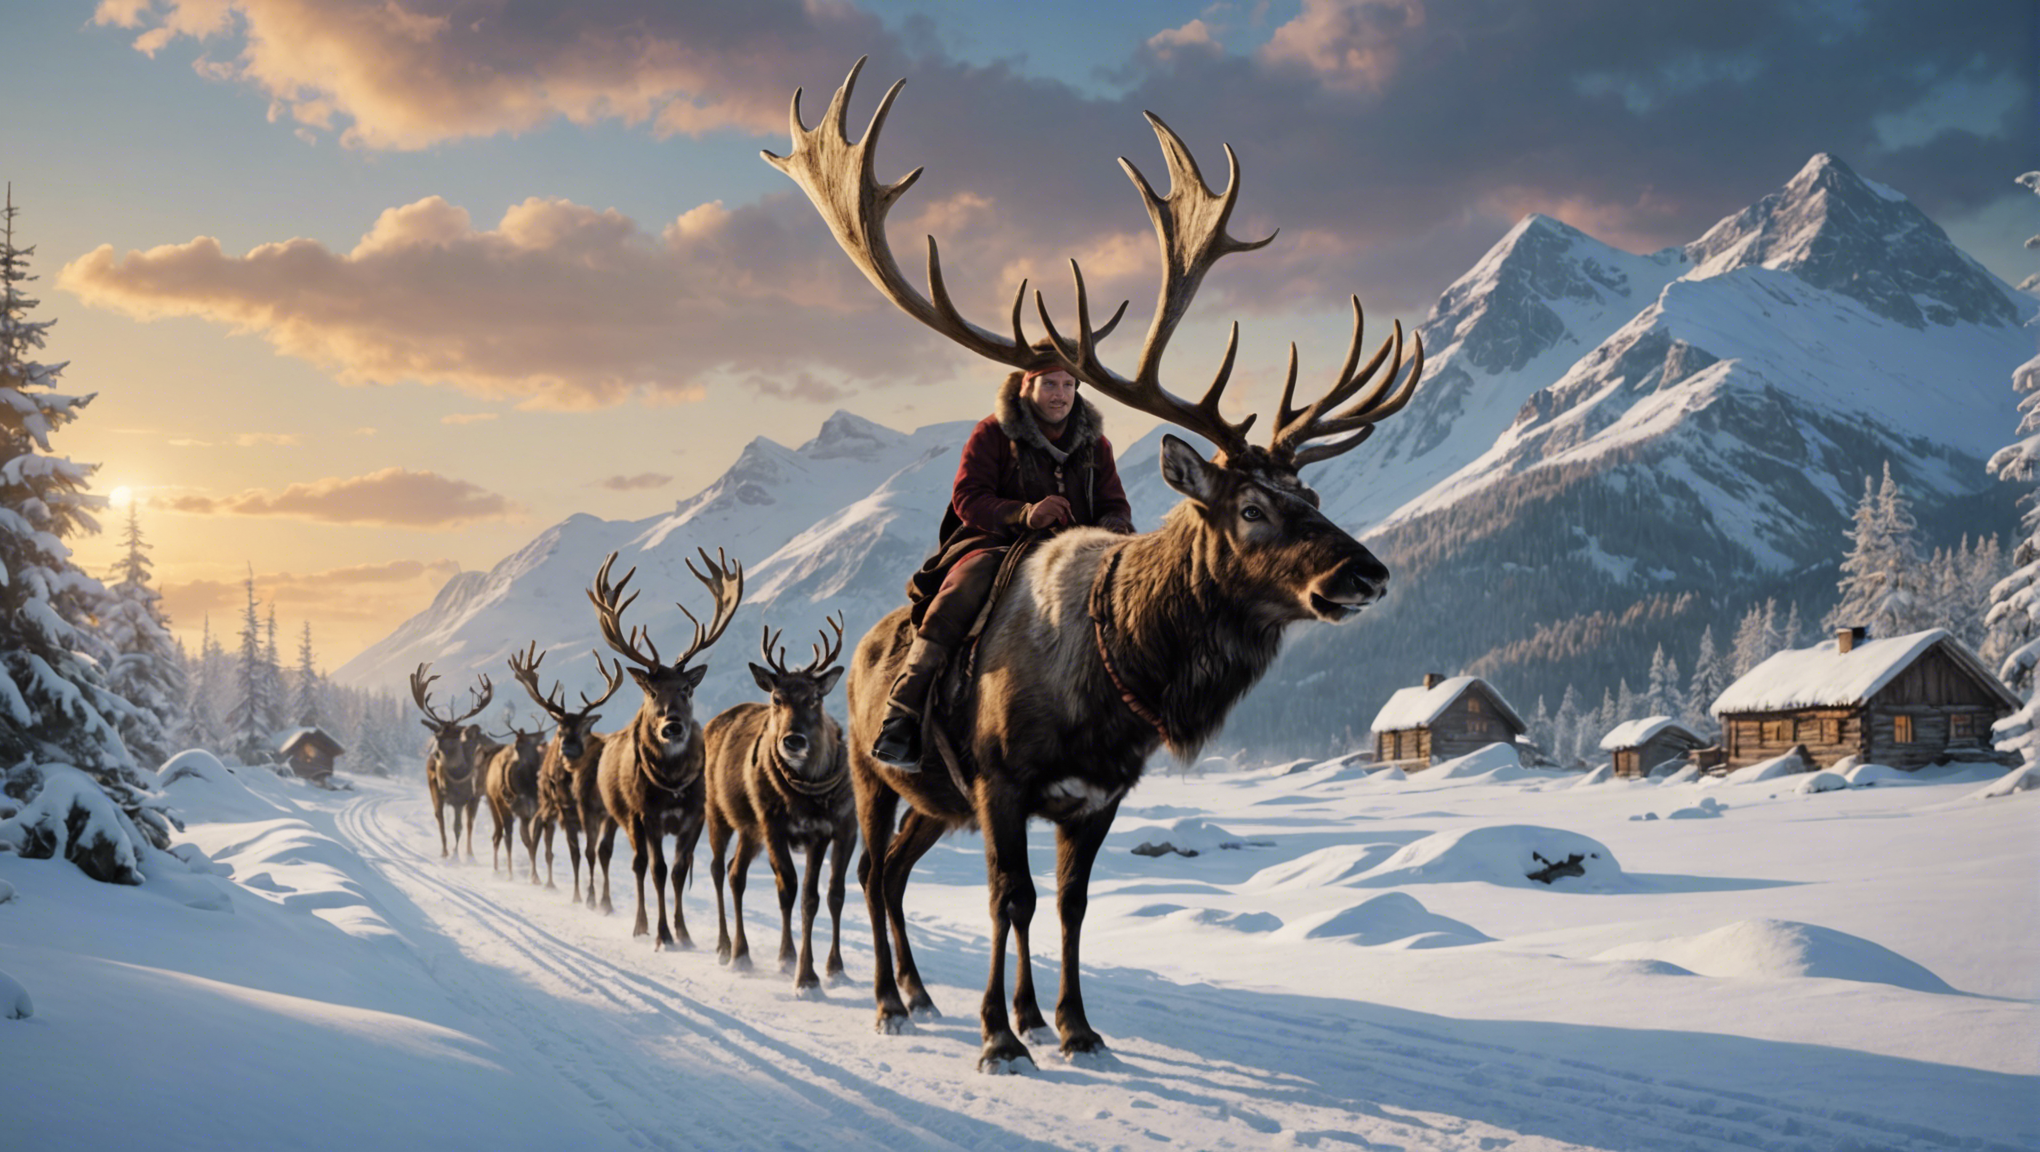 découvrez les légendes fascinantes liées aux liens entre les rennes et les traditions des peuples nordiques dans cet article captivant.